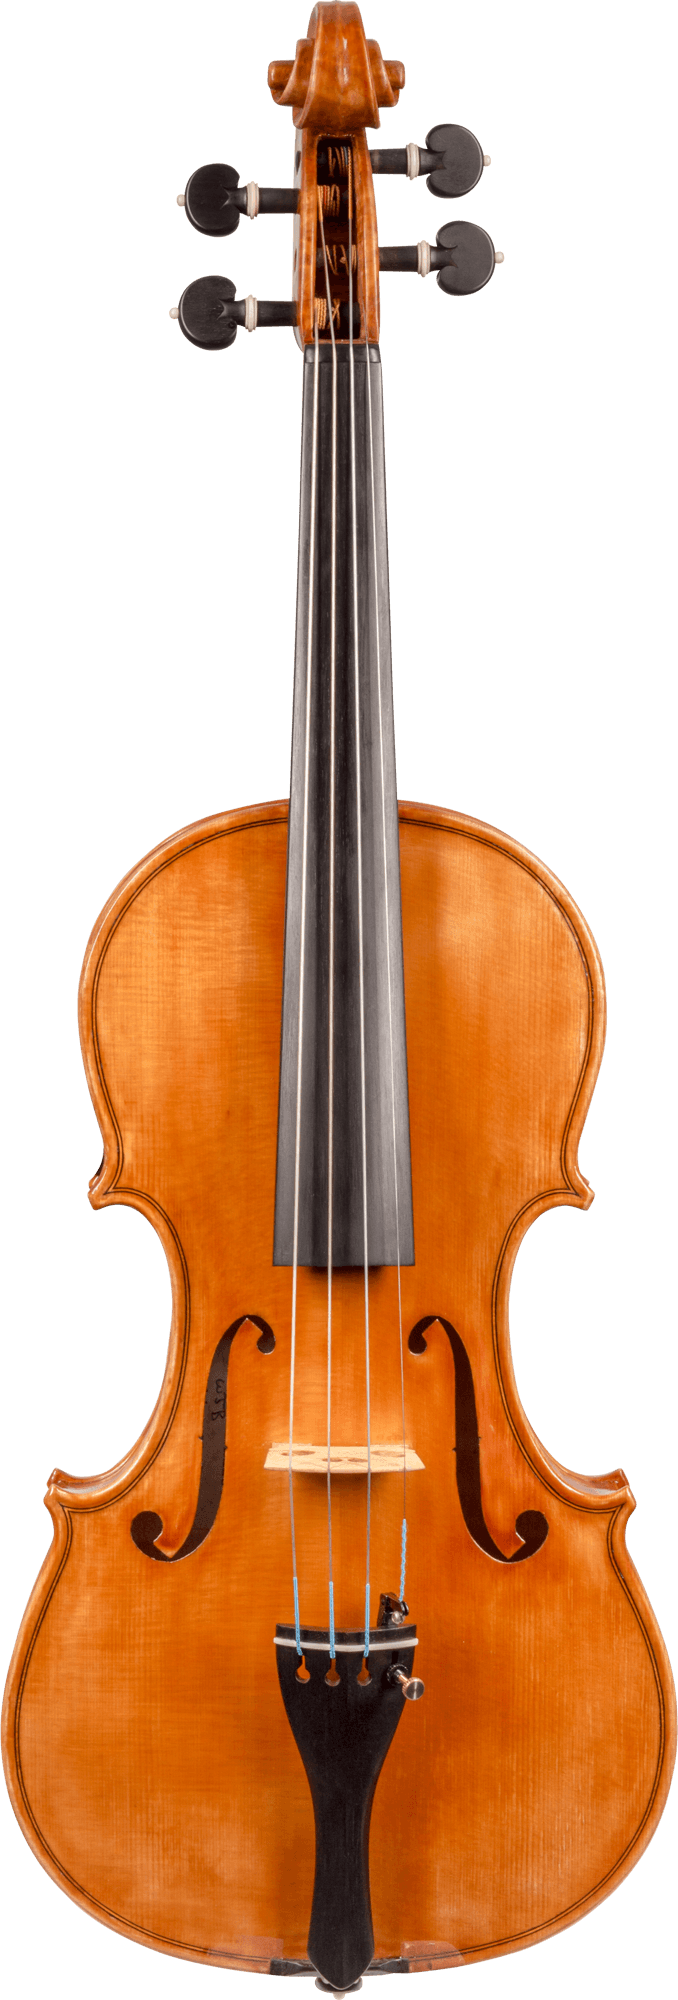 William Belote Violin, Ann Arbor, 2018, 7/8 Size